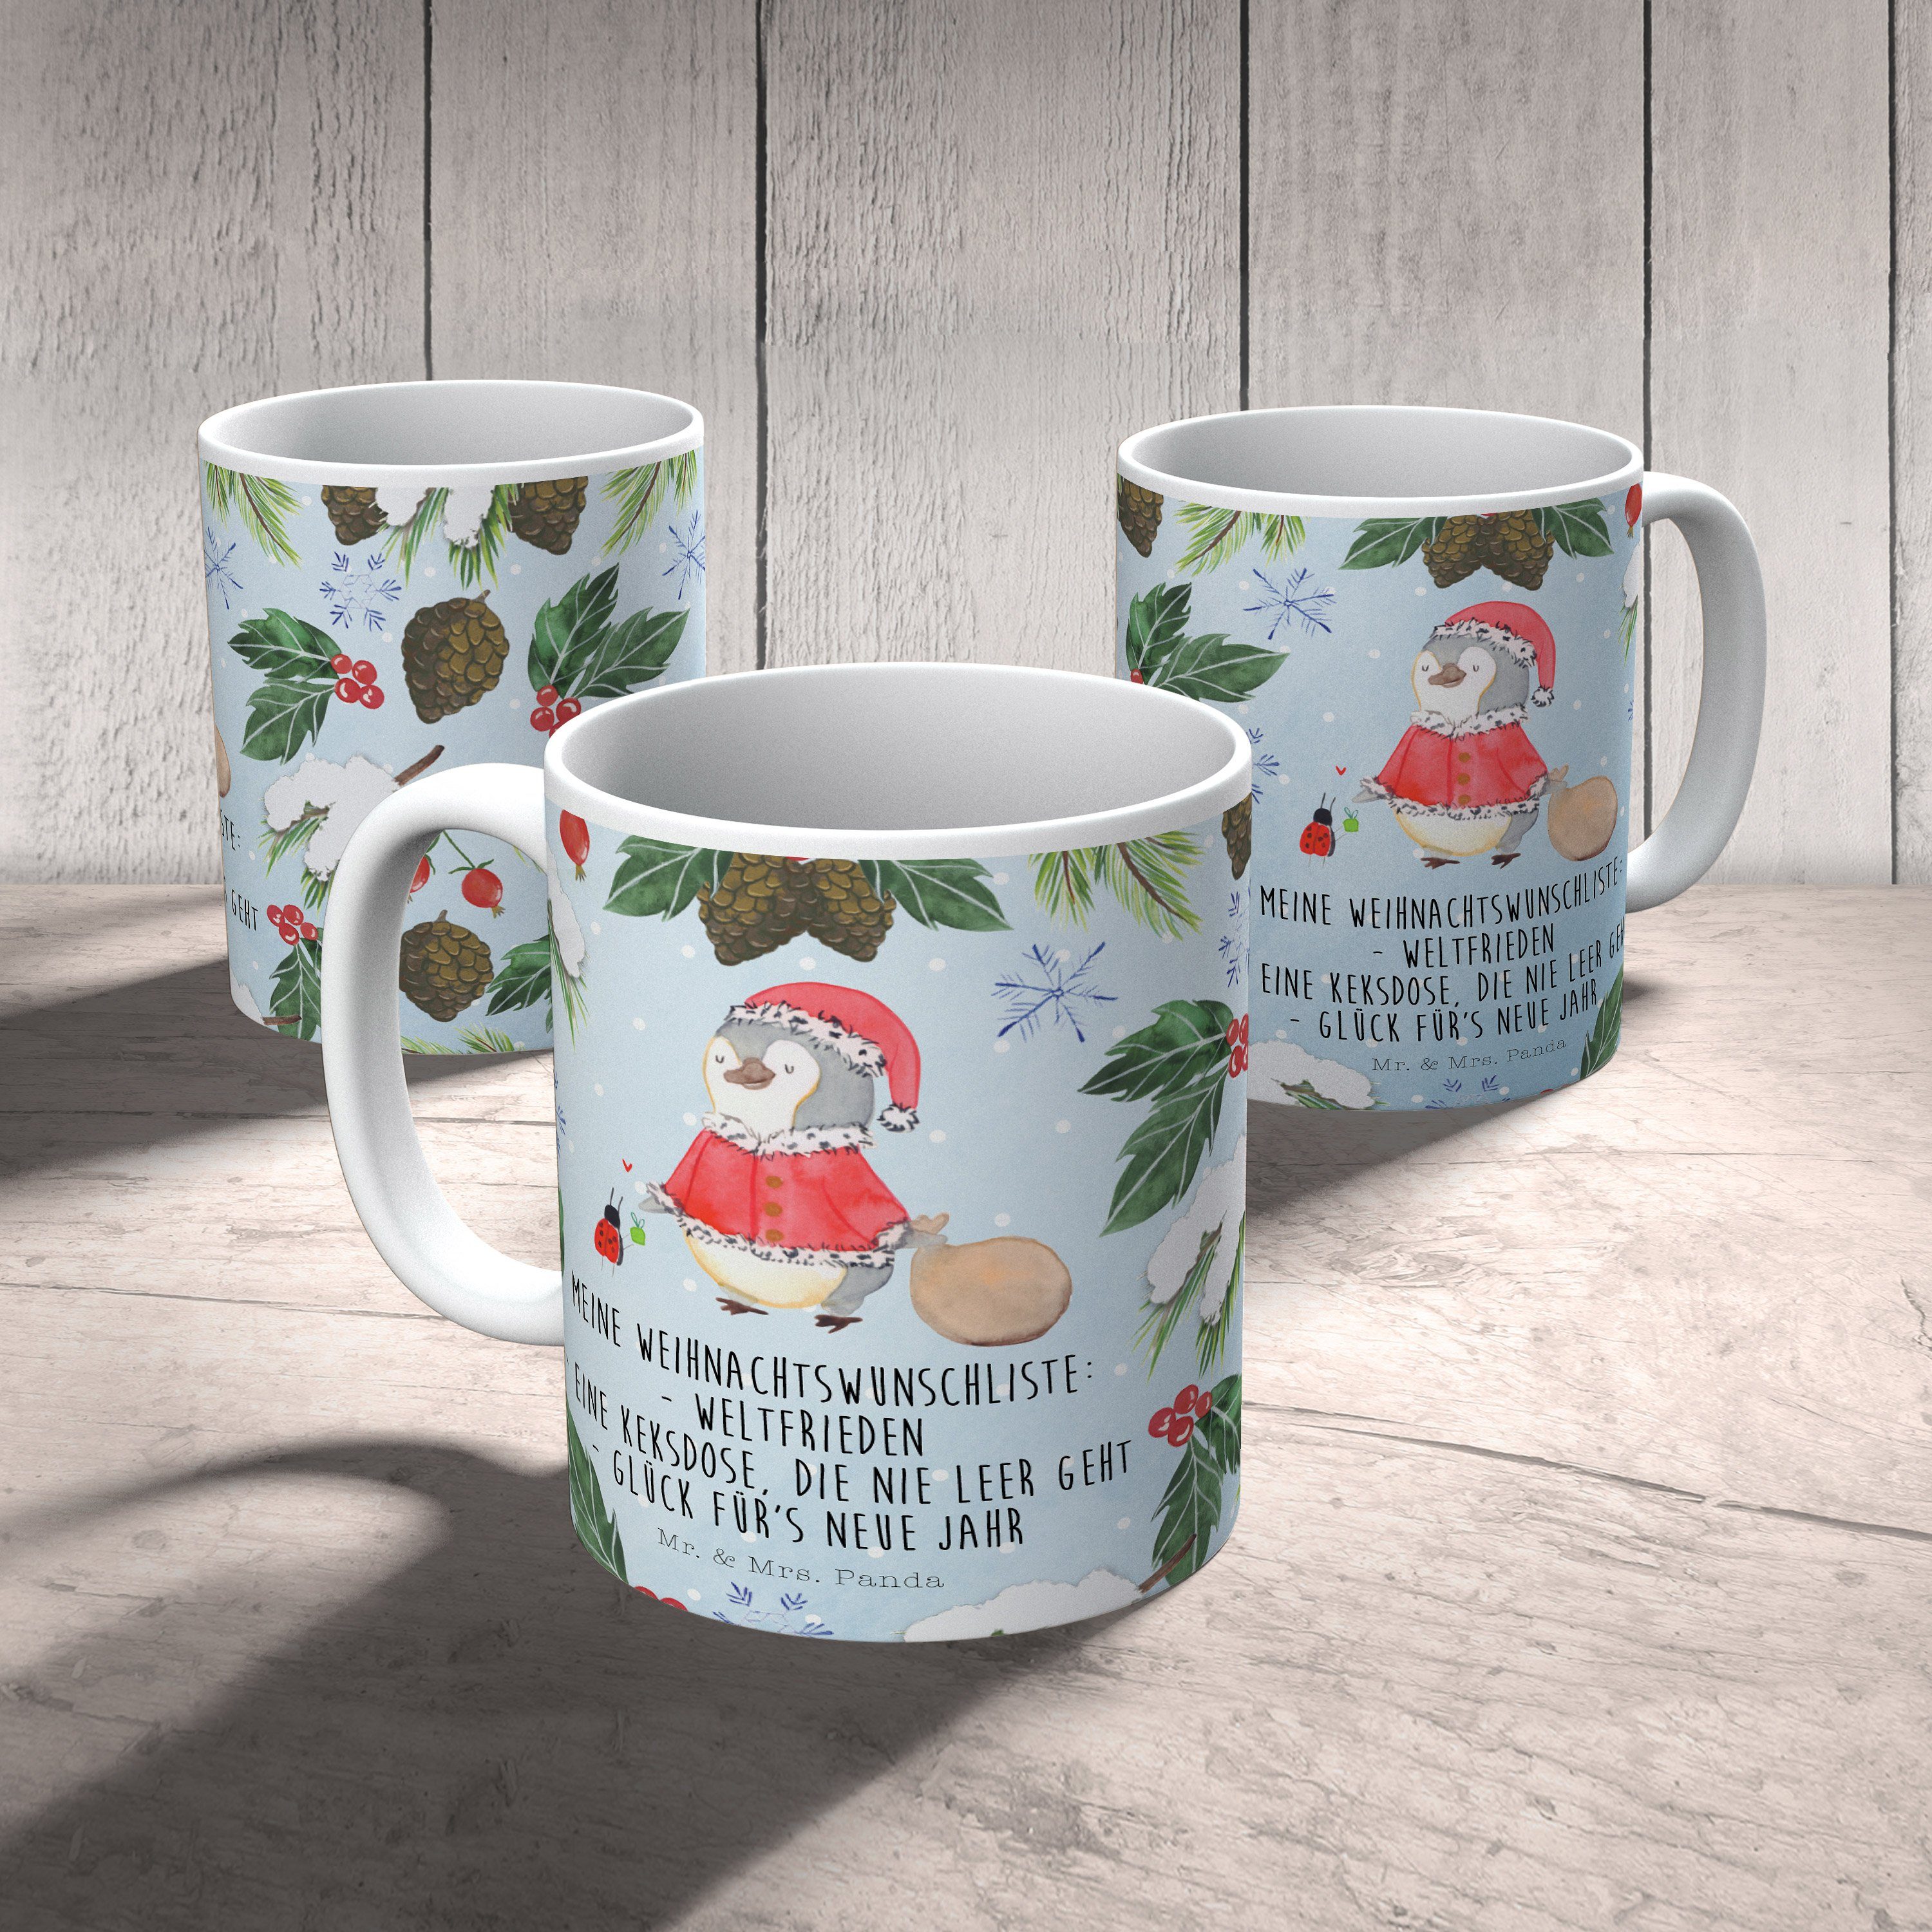 Nikolaus - Pinguin Tasse Weiß & Teetasse, Keramik Geschenk, Mr. Weihnachten, Tasse, - Panda Mrs. Büro